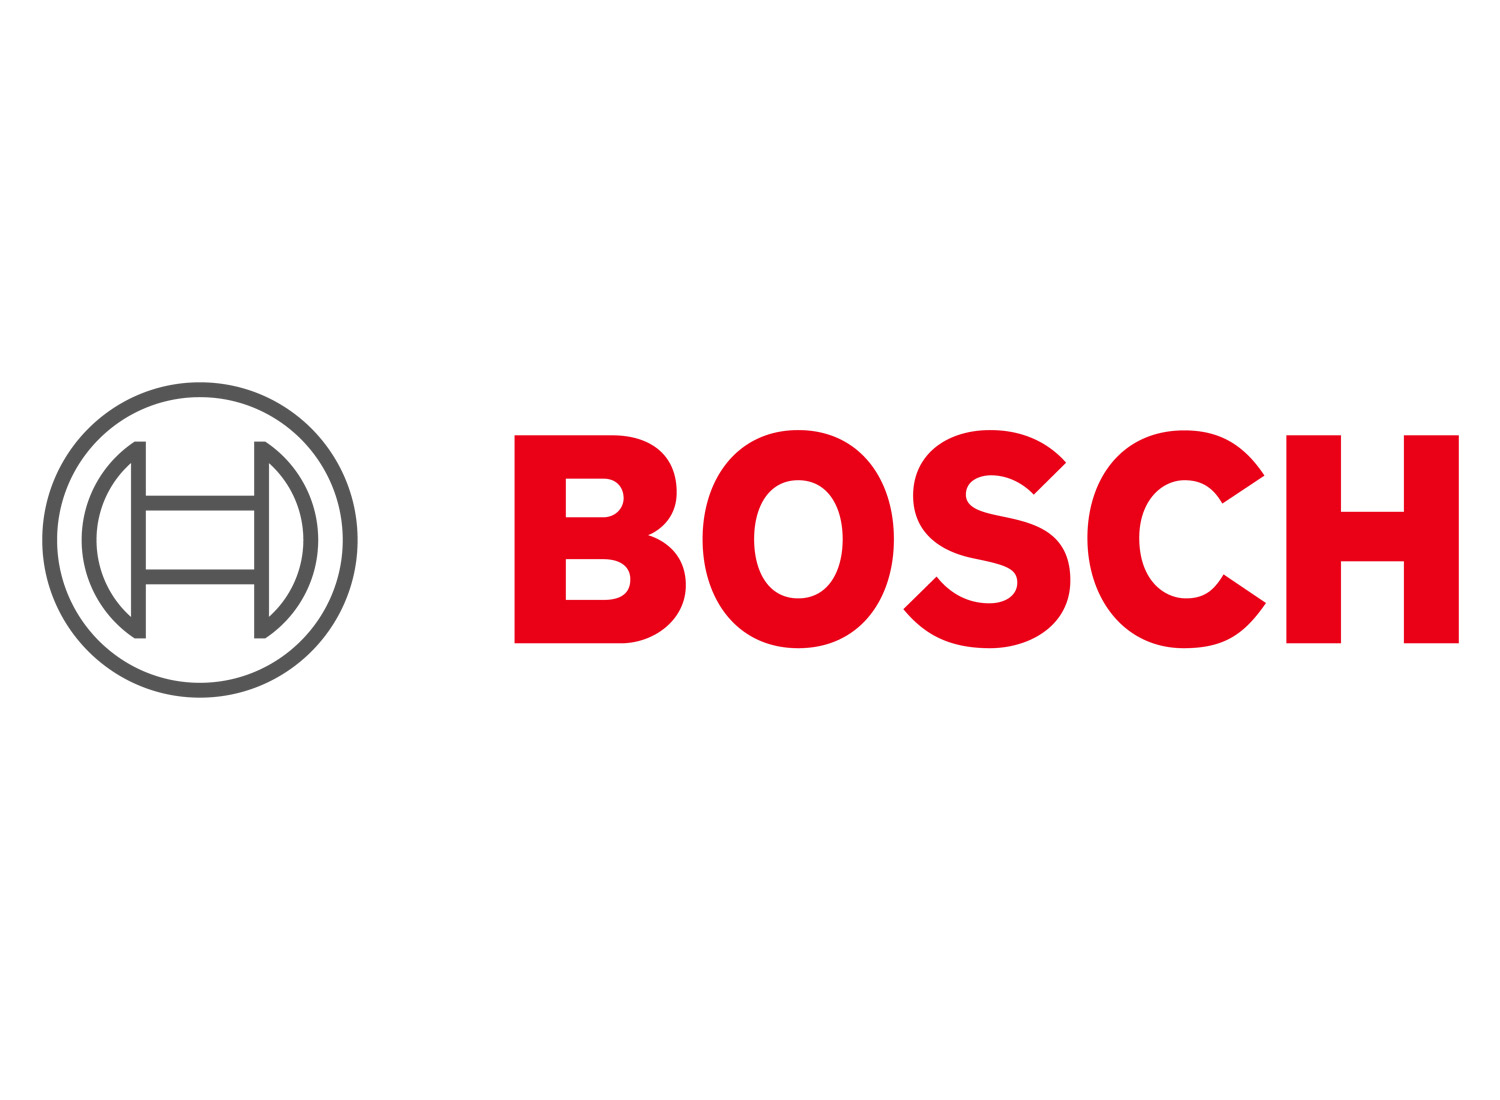 Bosch Markenlogo (ab 2019), Quelle: Robert Bosch GmbH